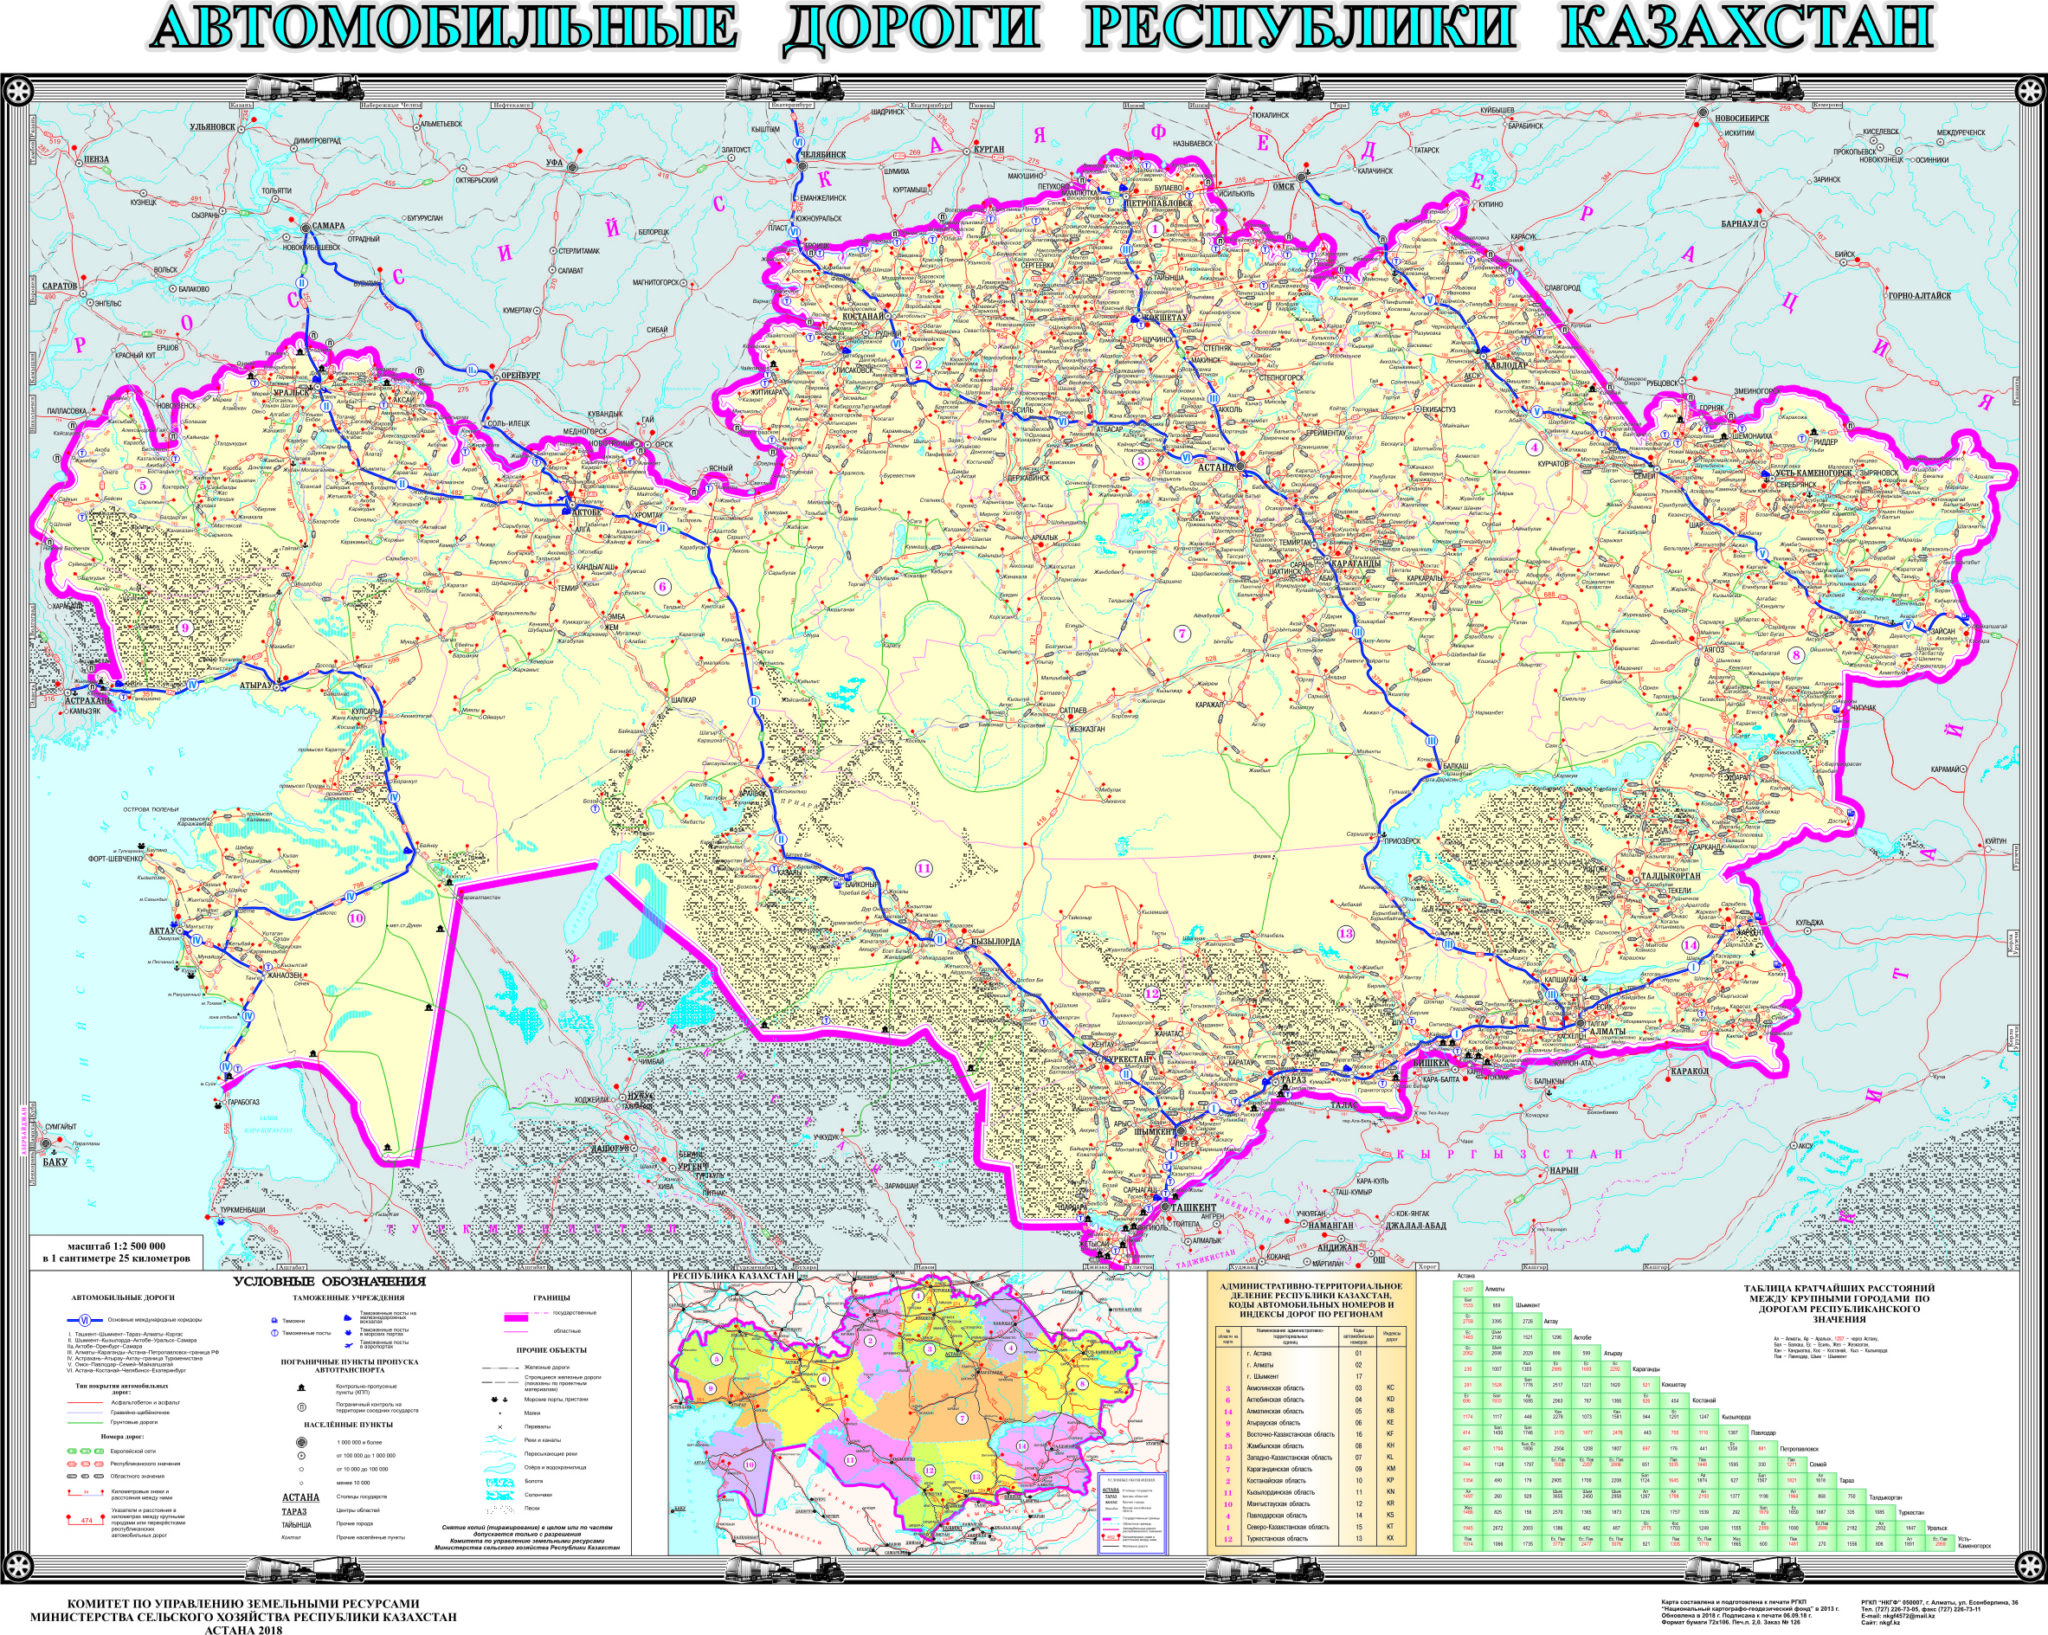 Карта казахстана с